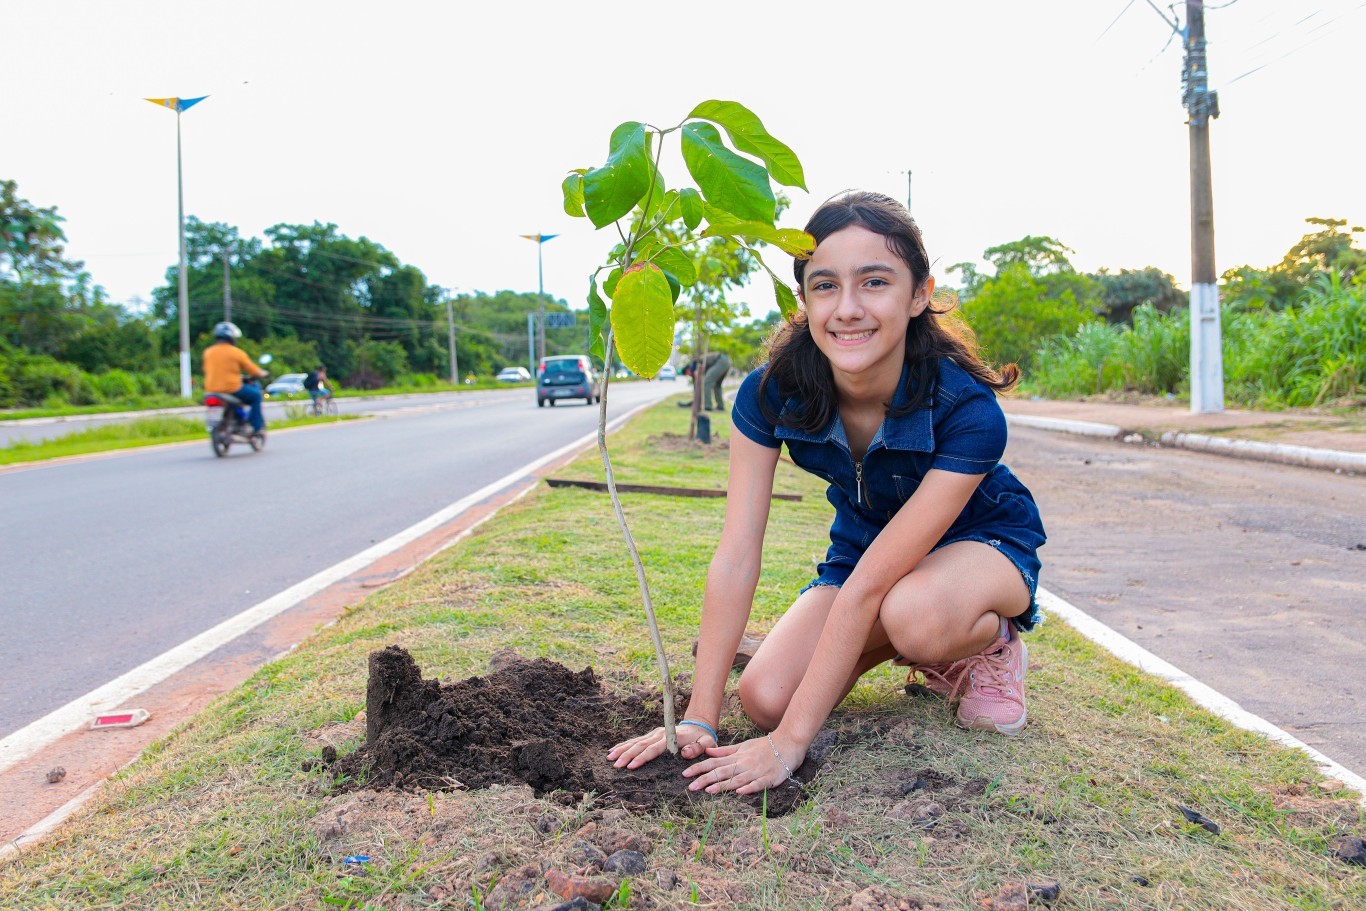 Projeto de arborização sustentável de Santarém é finalista da Smart City Expo Curitiba